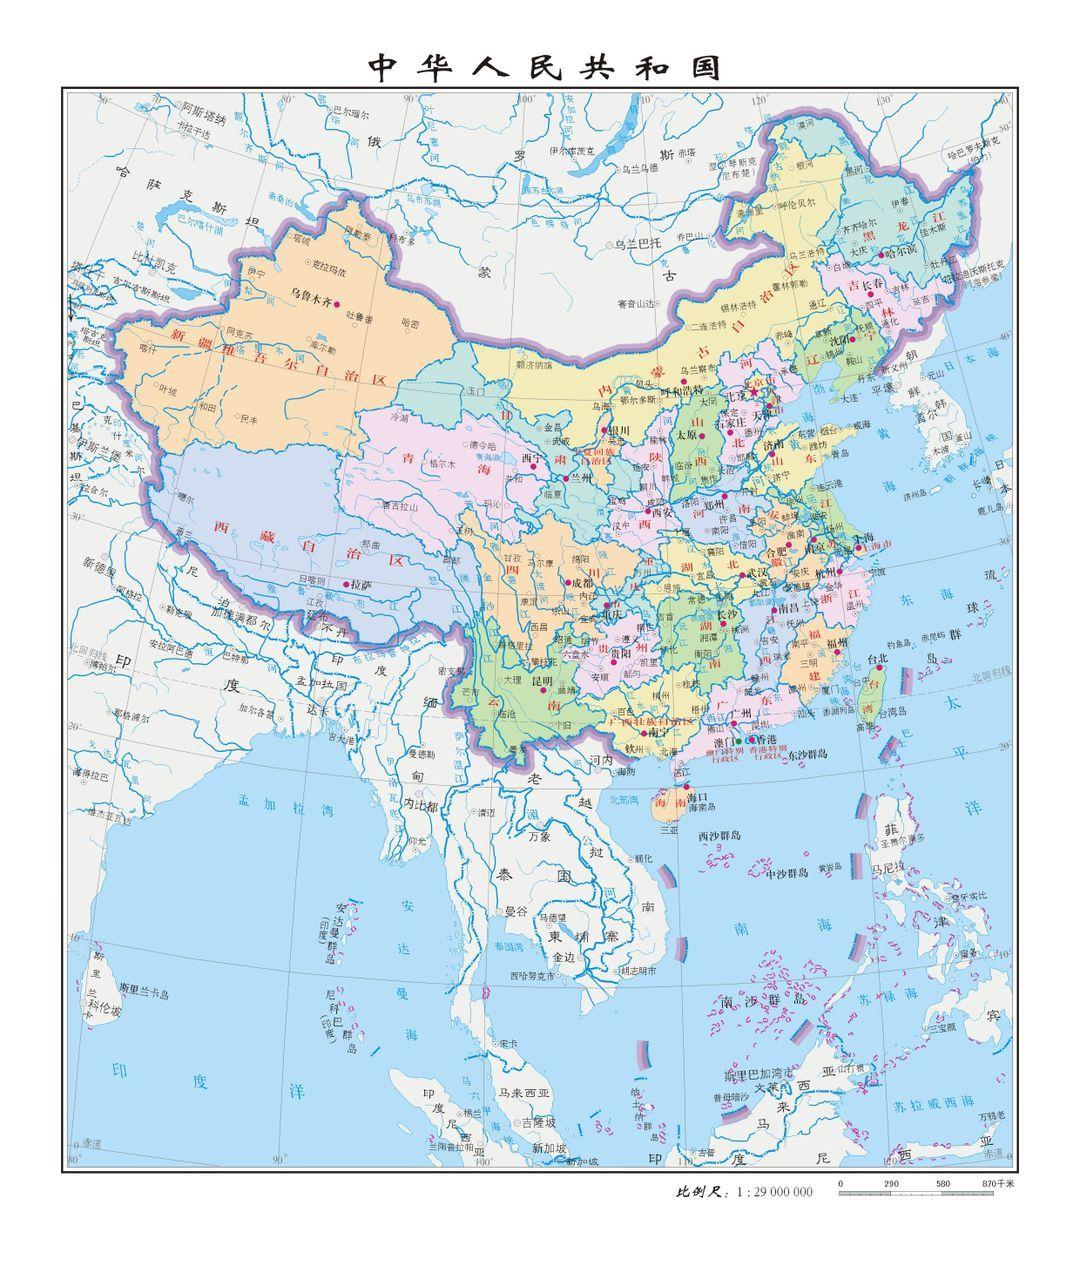 成吉思汗时代的蒙古军队是否可以代表古代中国